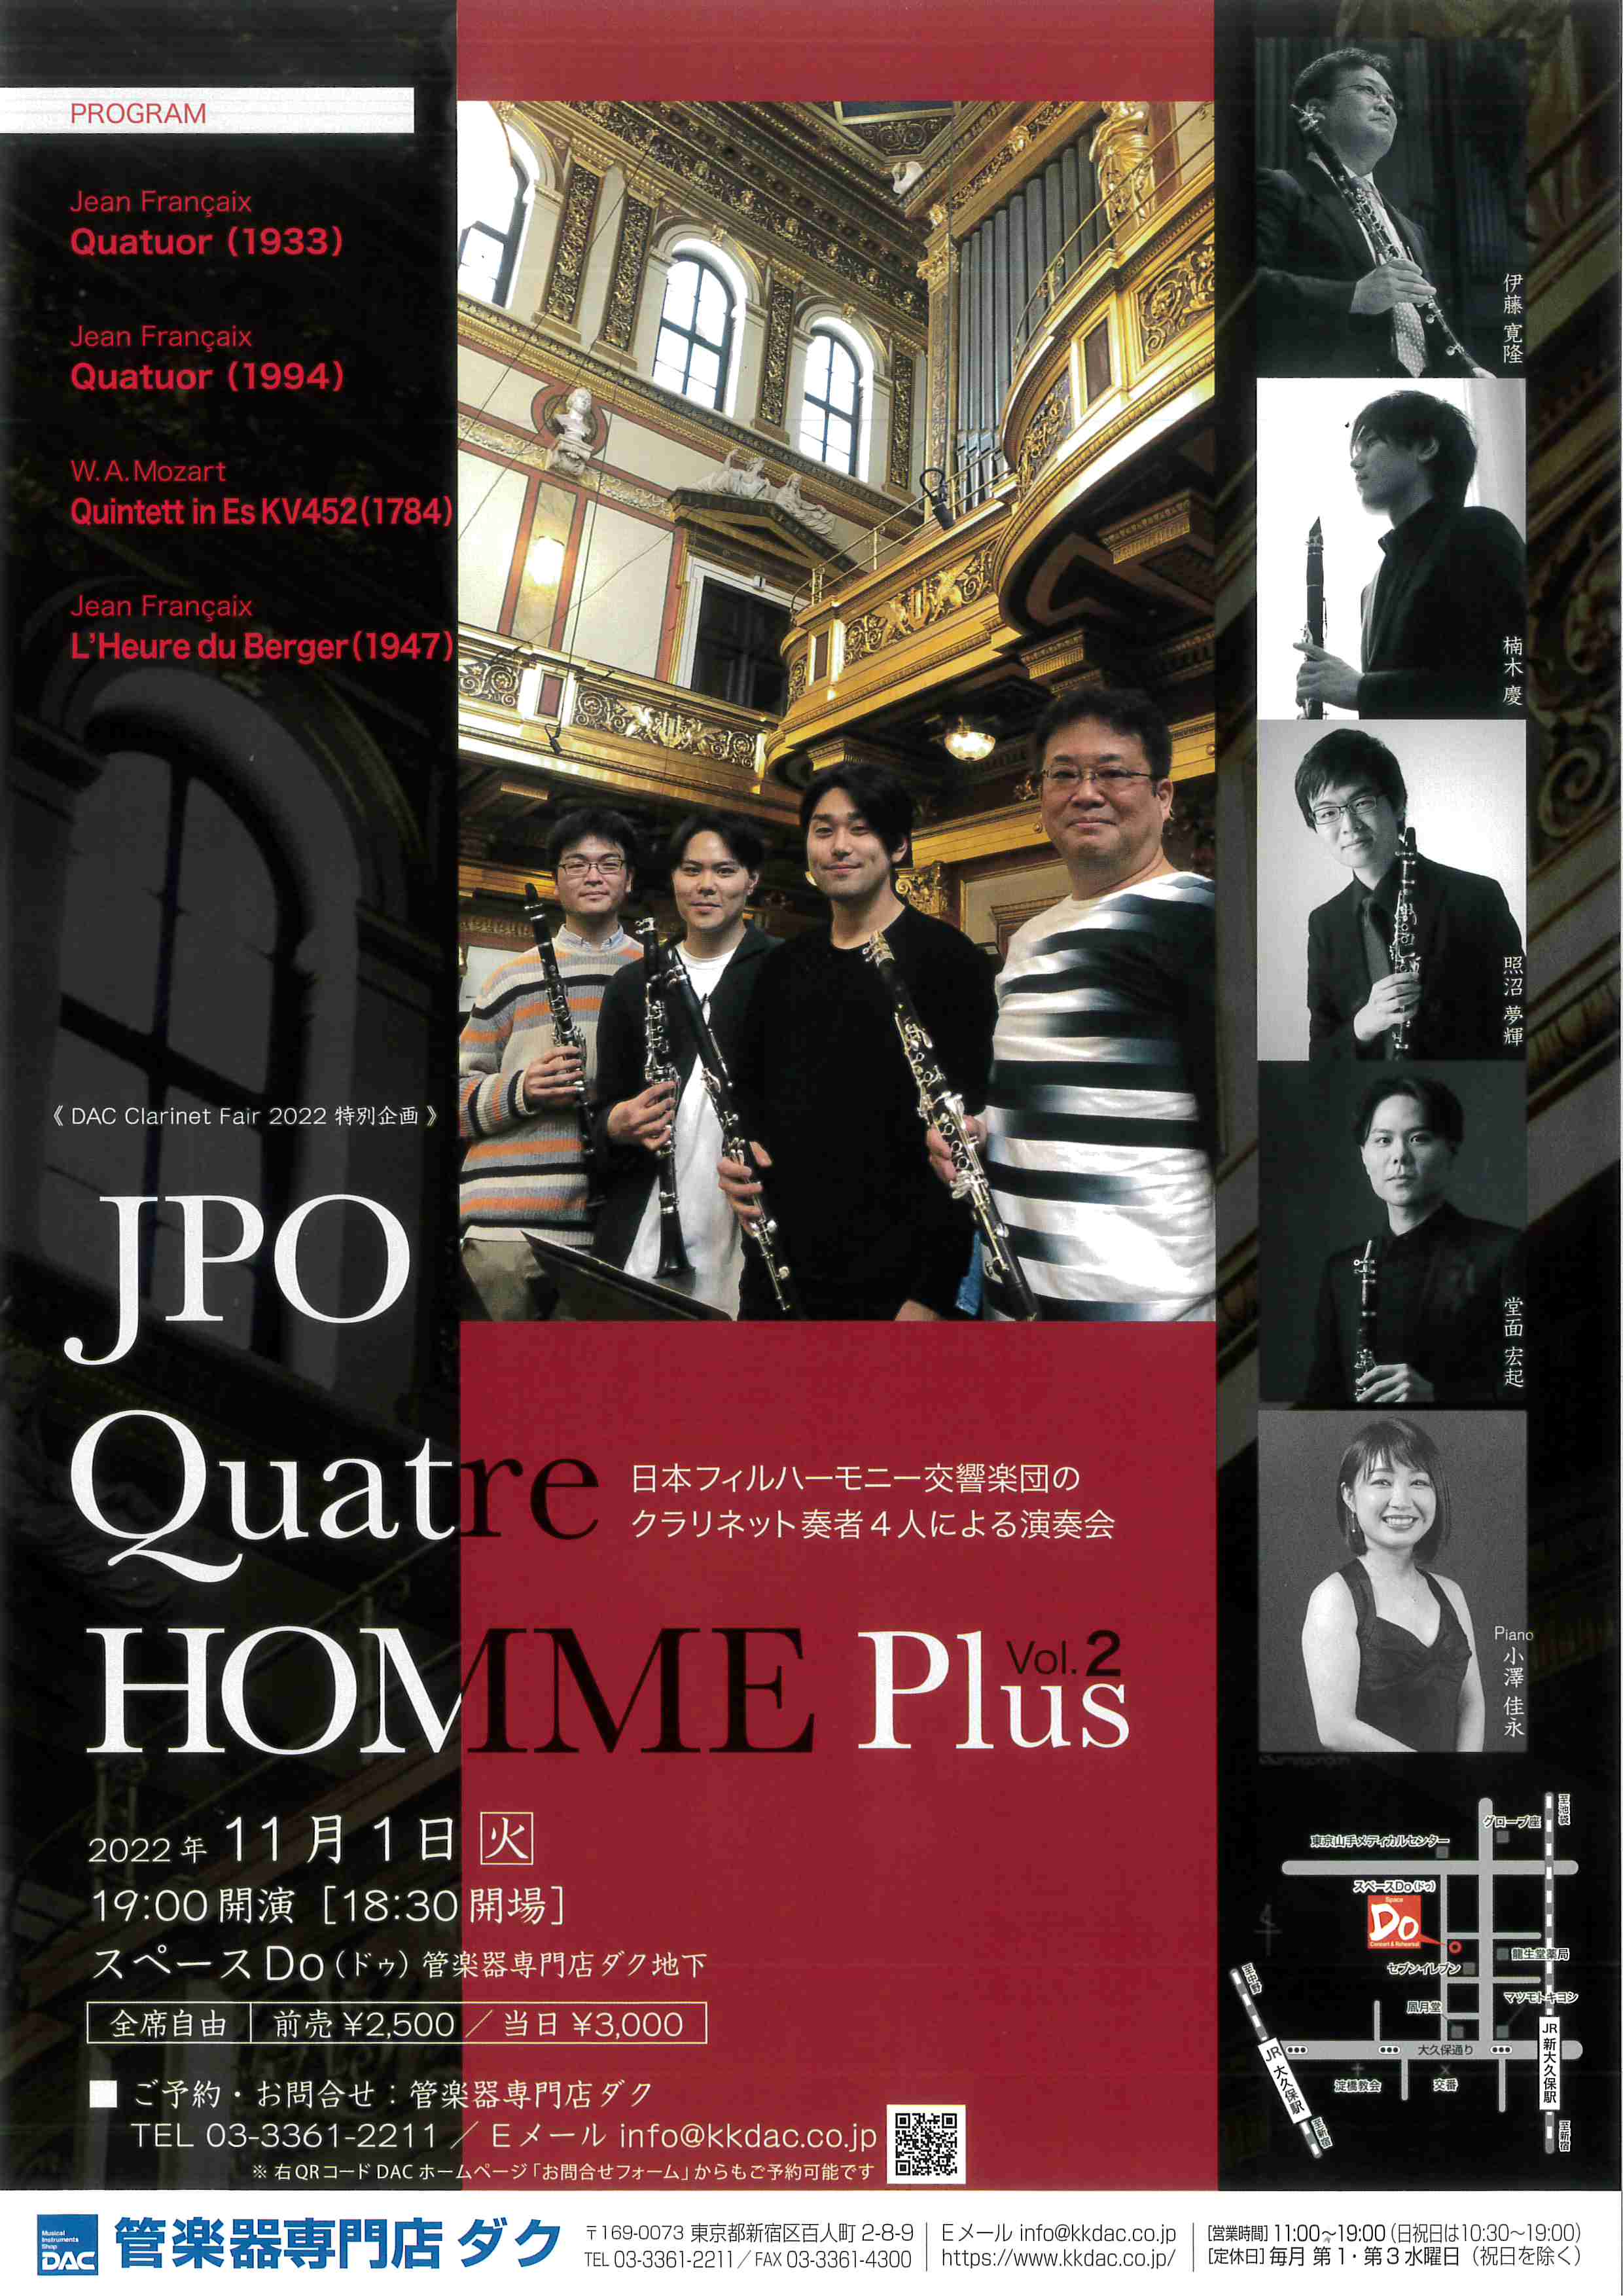 JPO Quarte HOMME Plus Vol.2